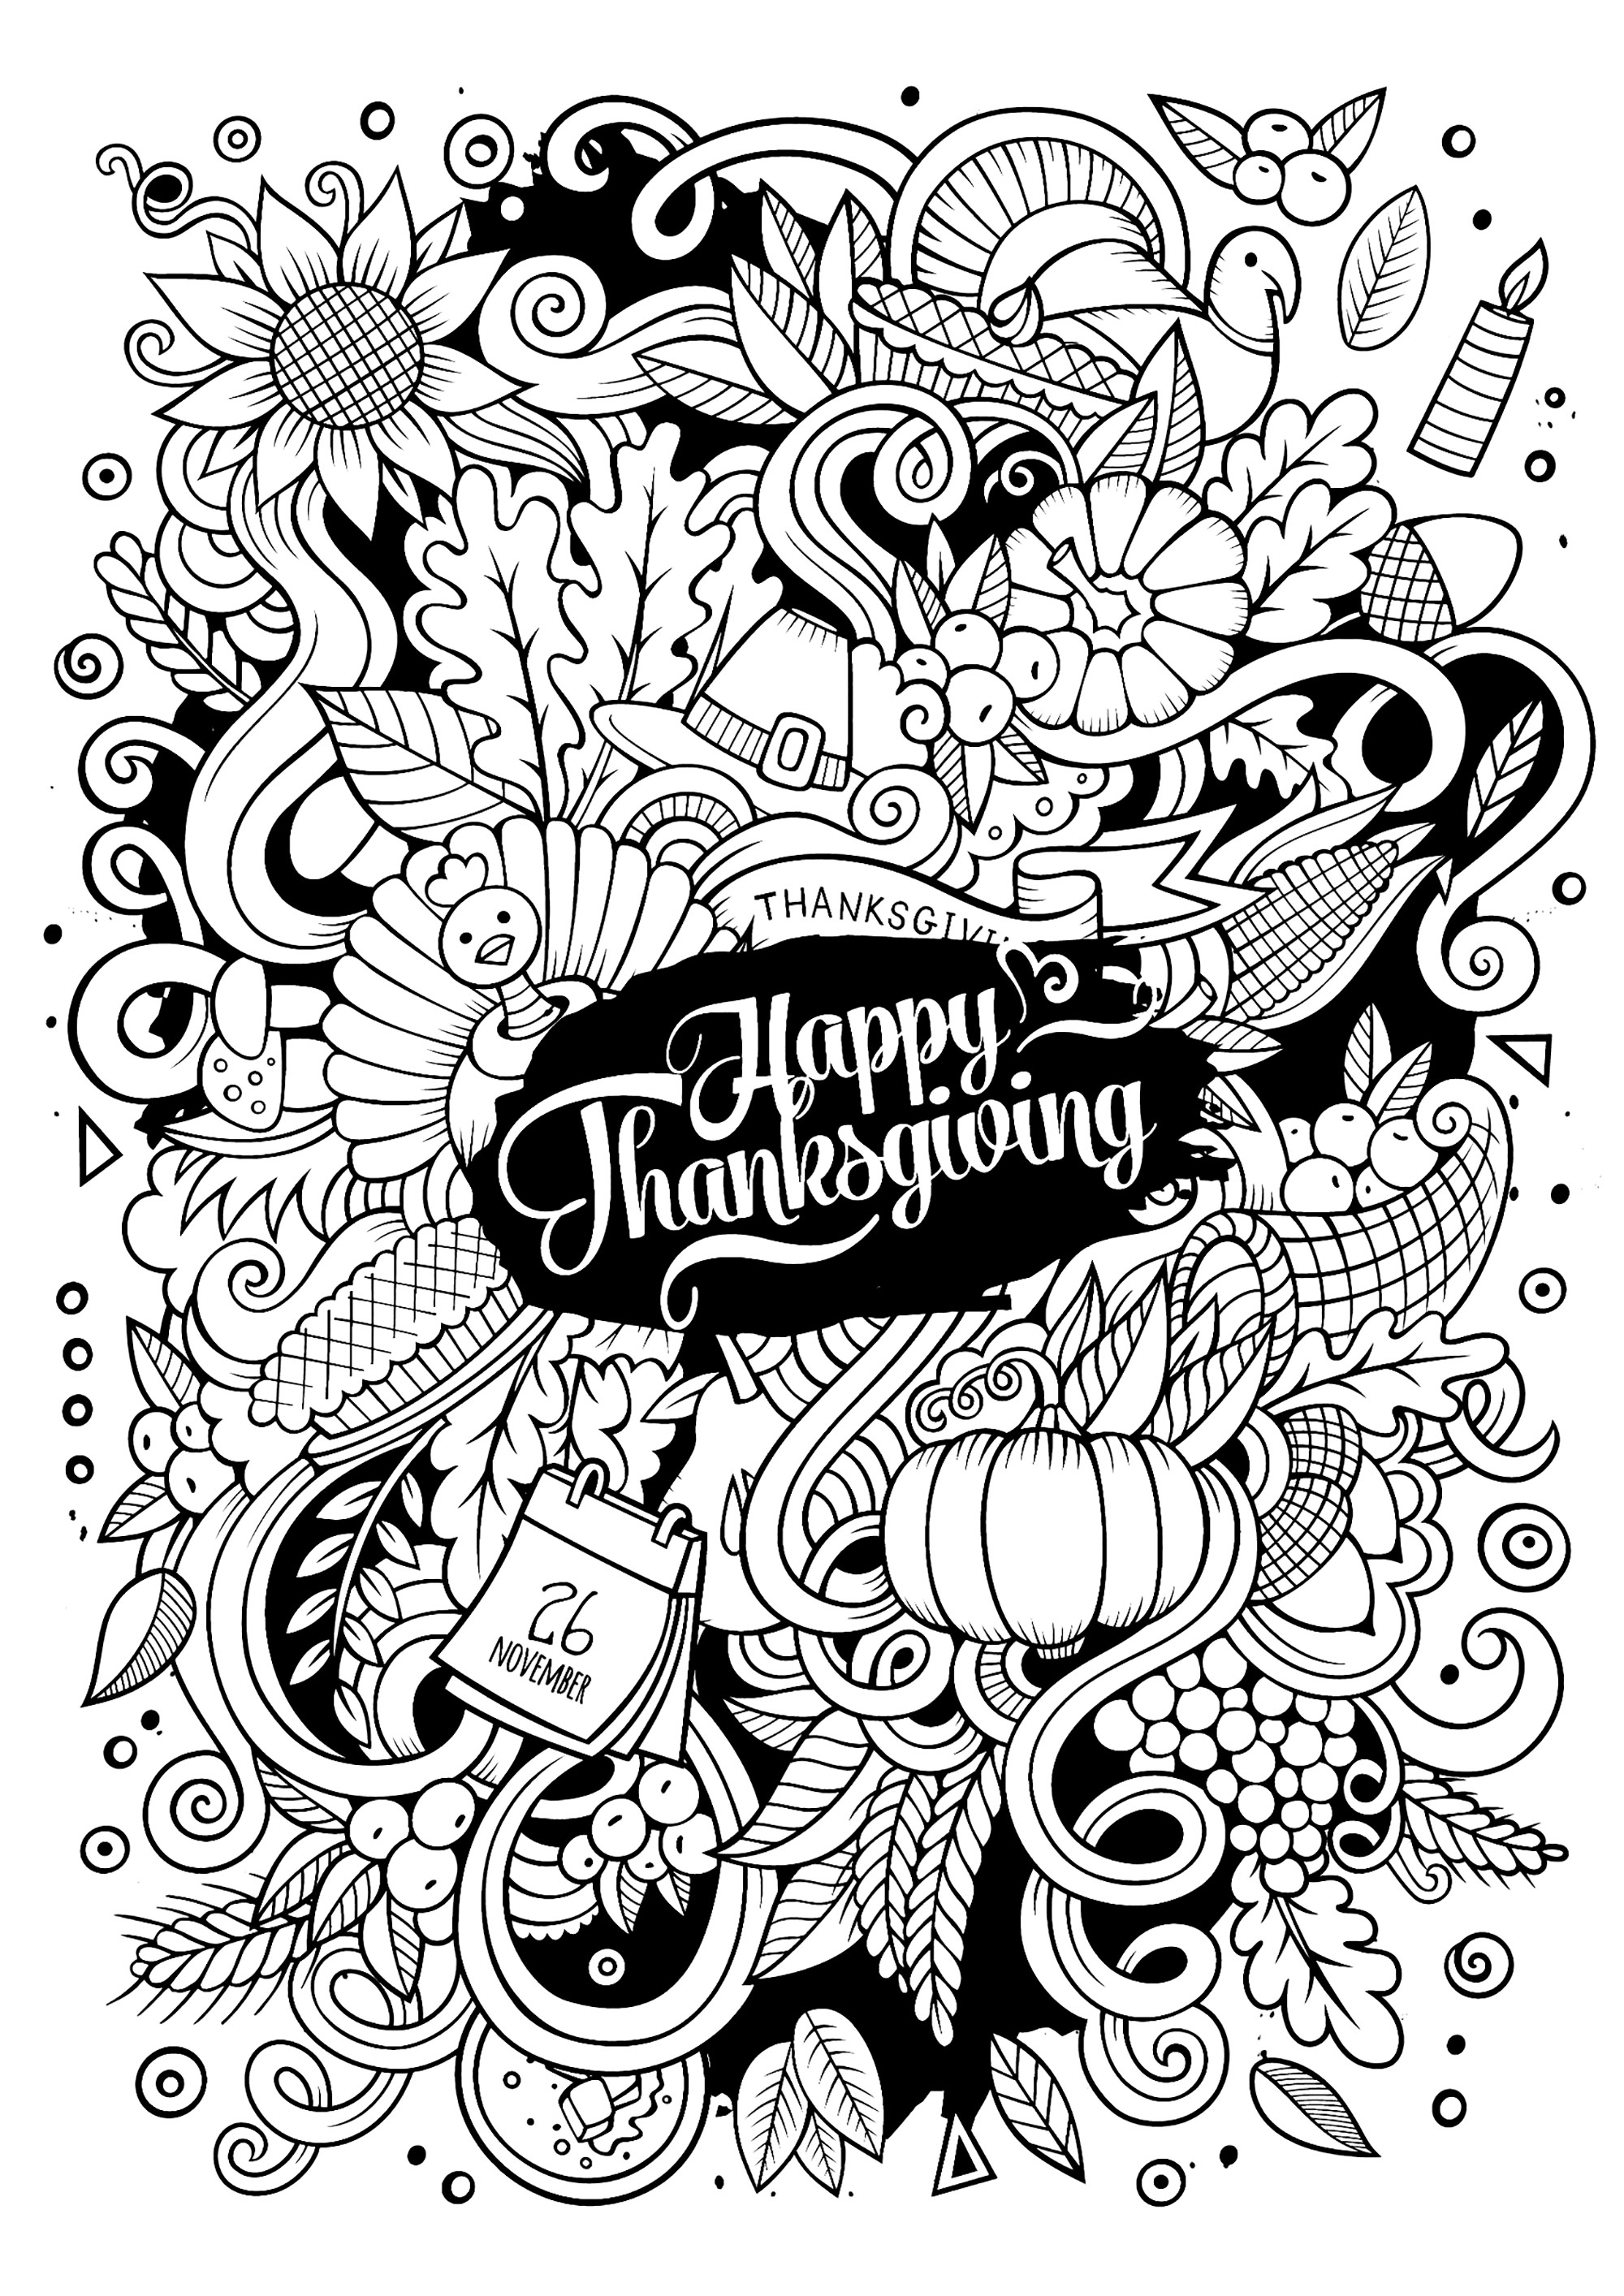 Eine Malvorlage im 'Doodle'-Stil für Thanksgiving. Viele hübsche Herbst- und Erntedankmotive zum Ausmalen, in einer Vielzahl von leuchtenden Farben.